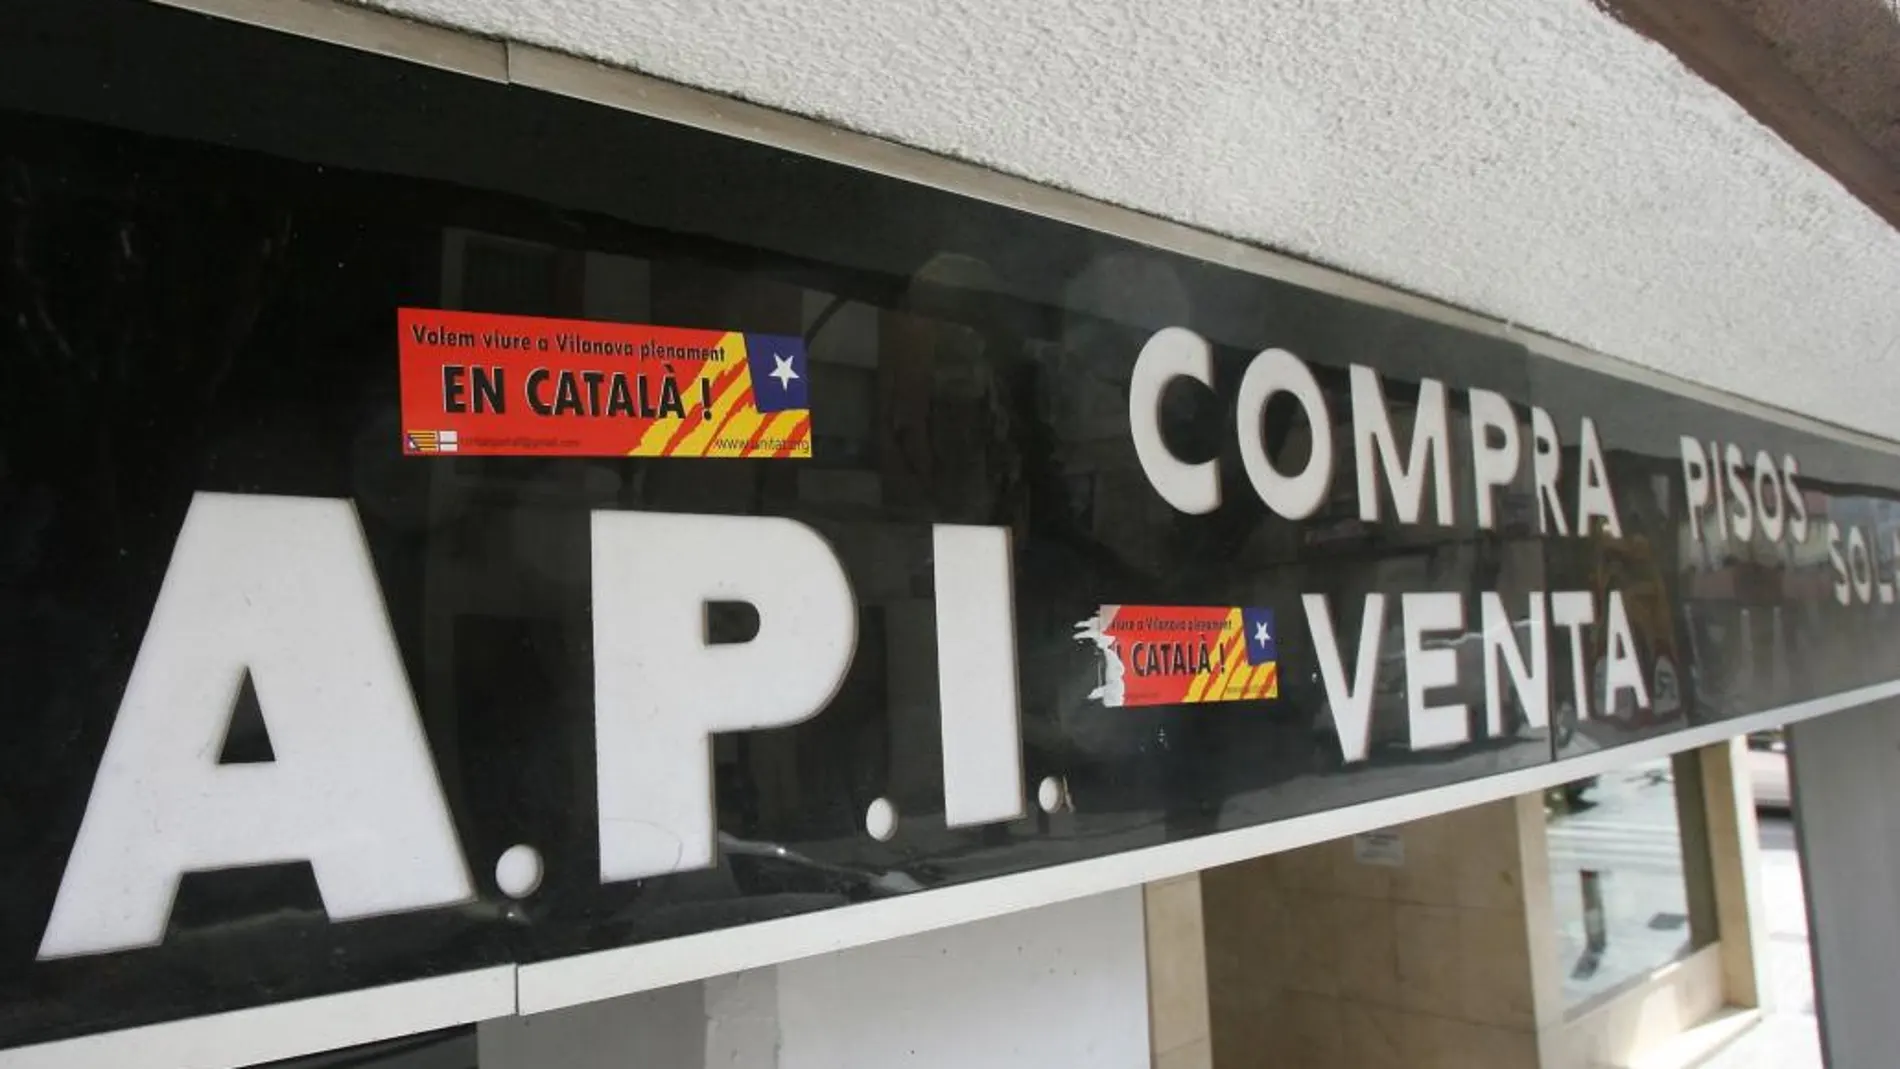 Rótulo exterrior del establecimiento en Vilanova i la Geltrú sancionado por no rotular en catalán